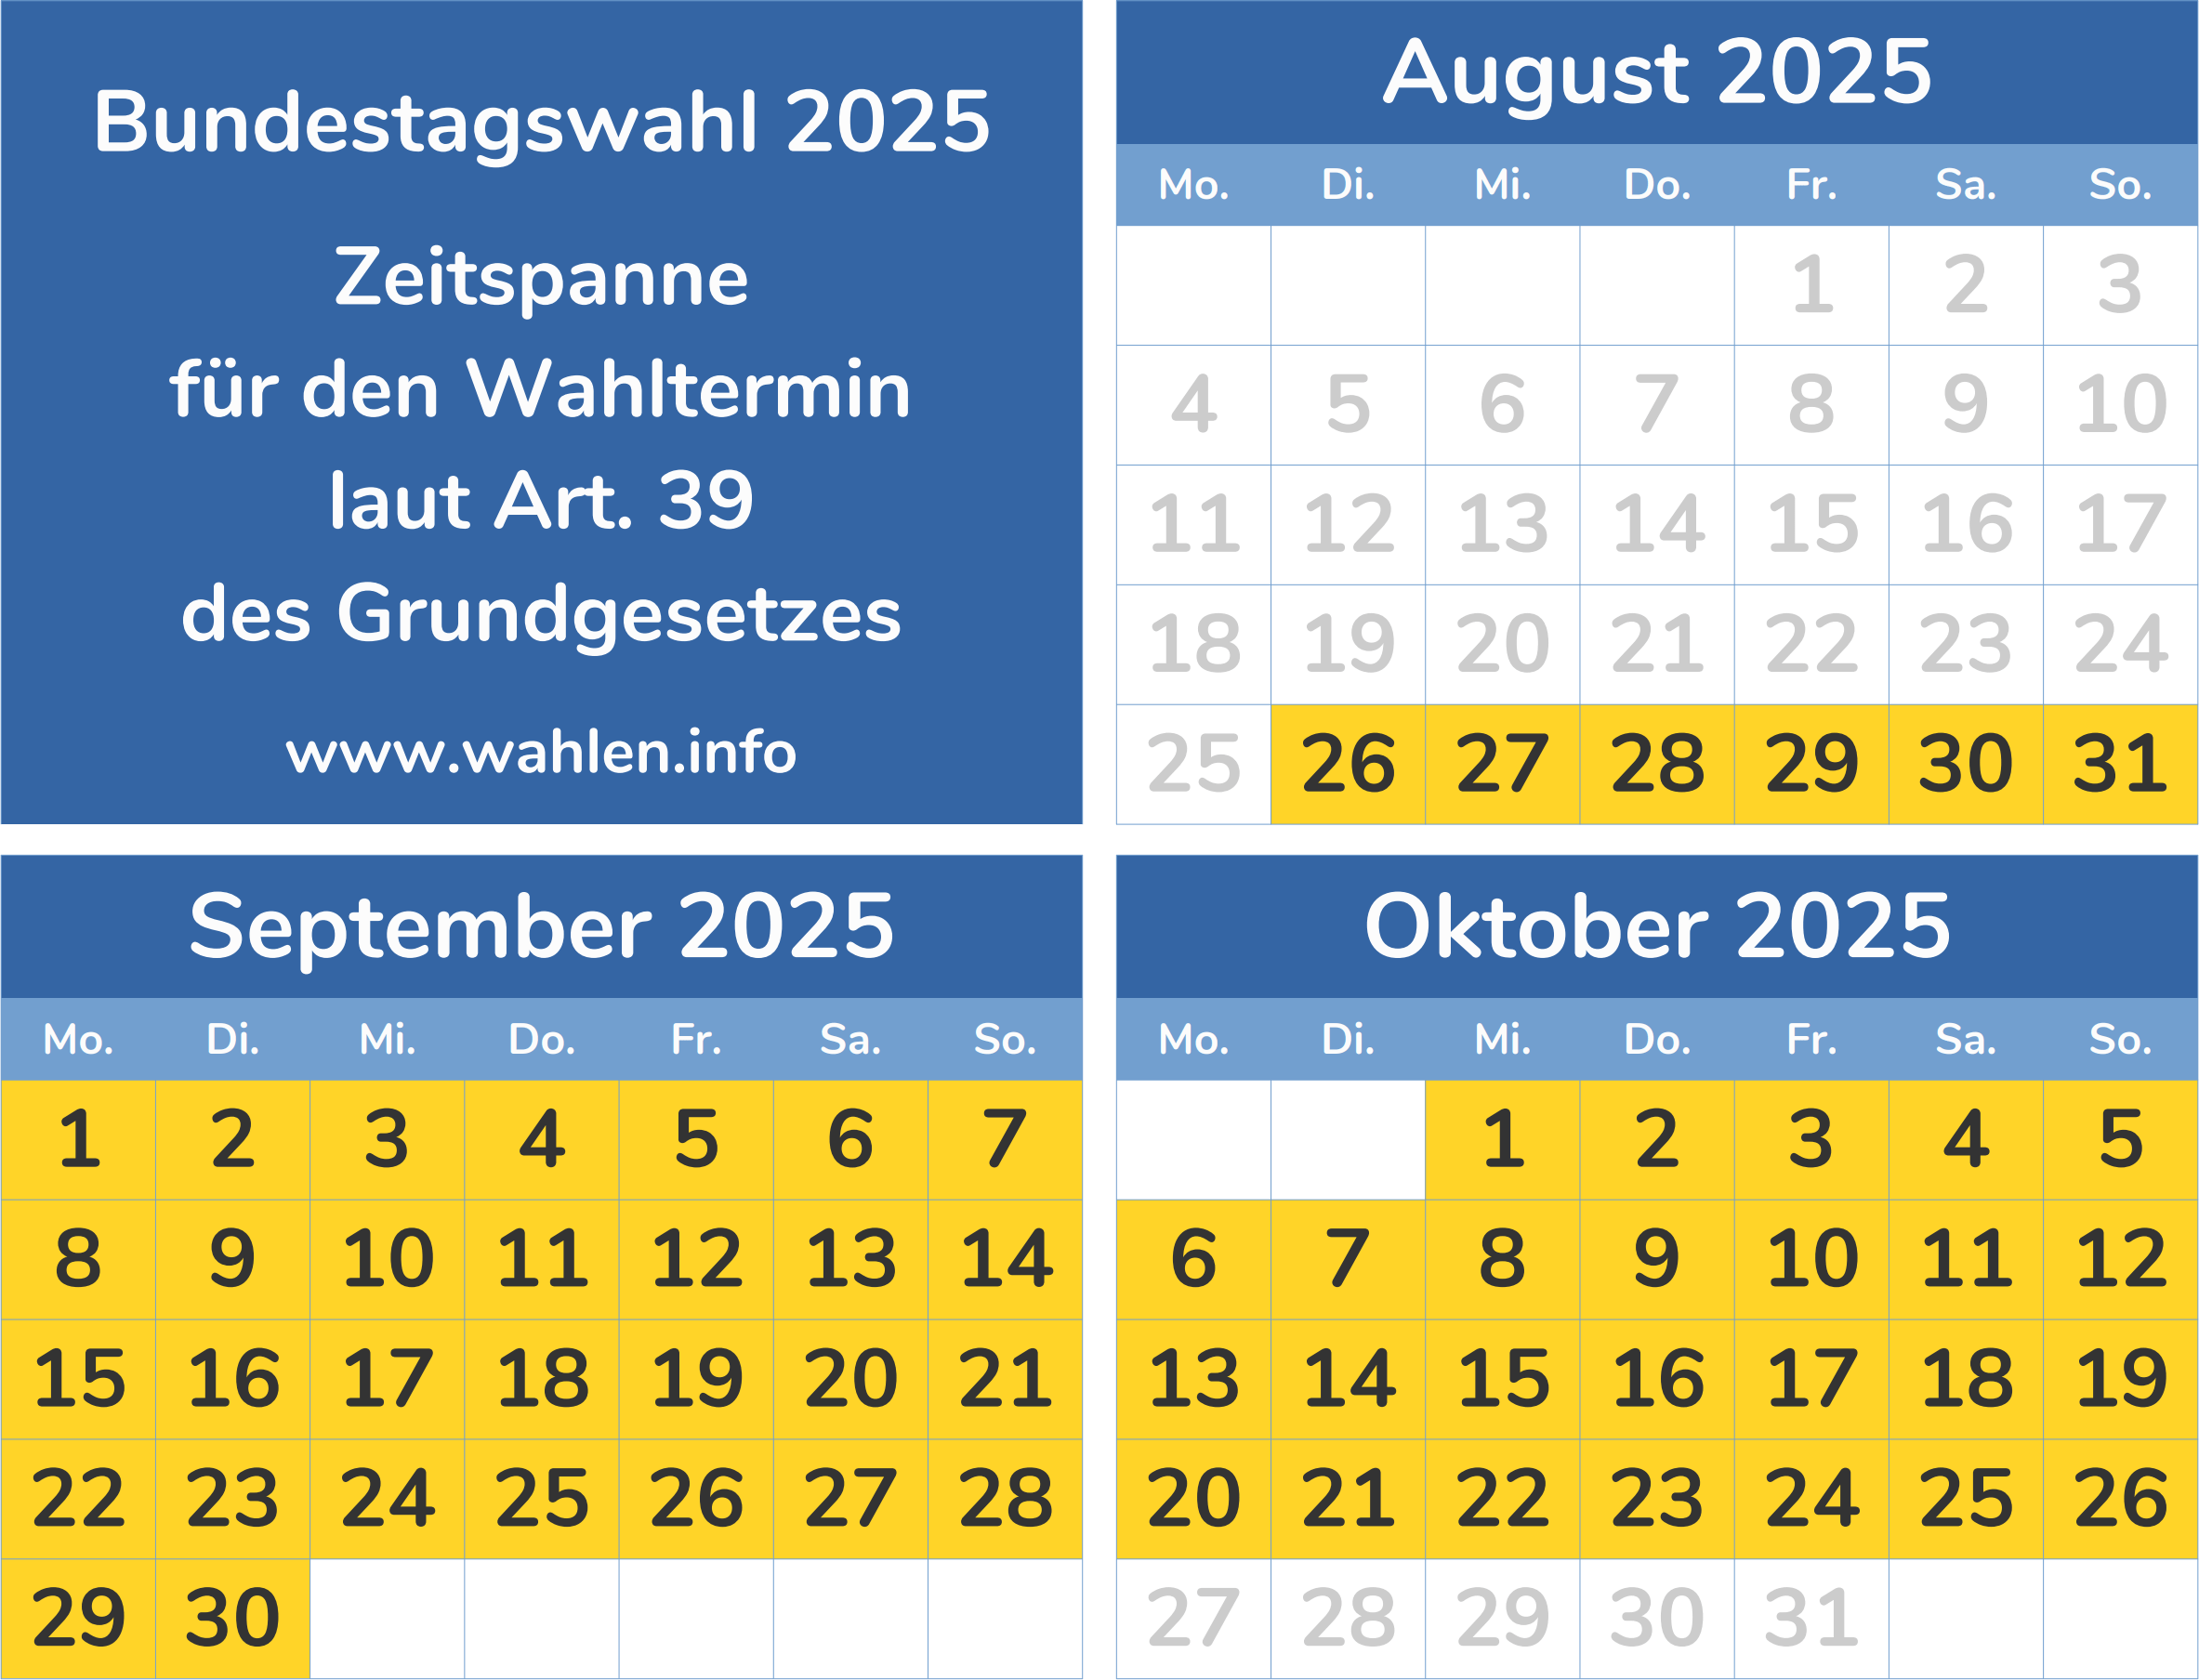 Termin der Bundestagswahl 2025 (Wahltermin, Zeitspanne)